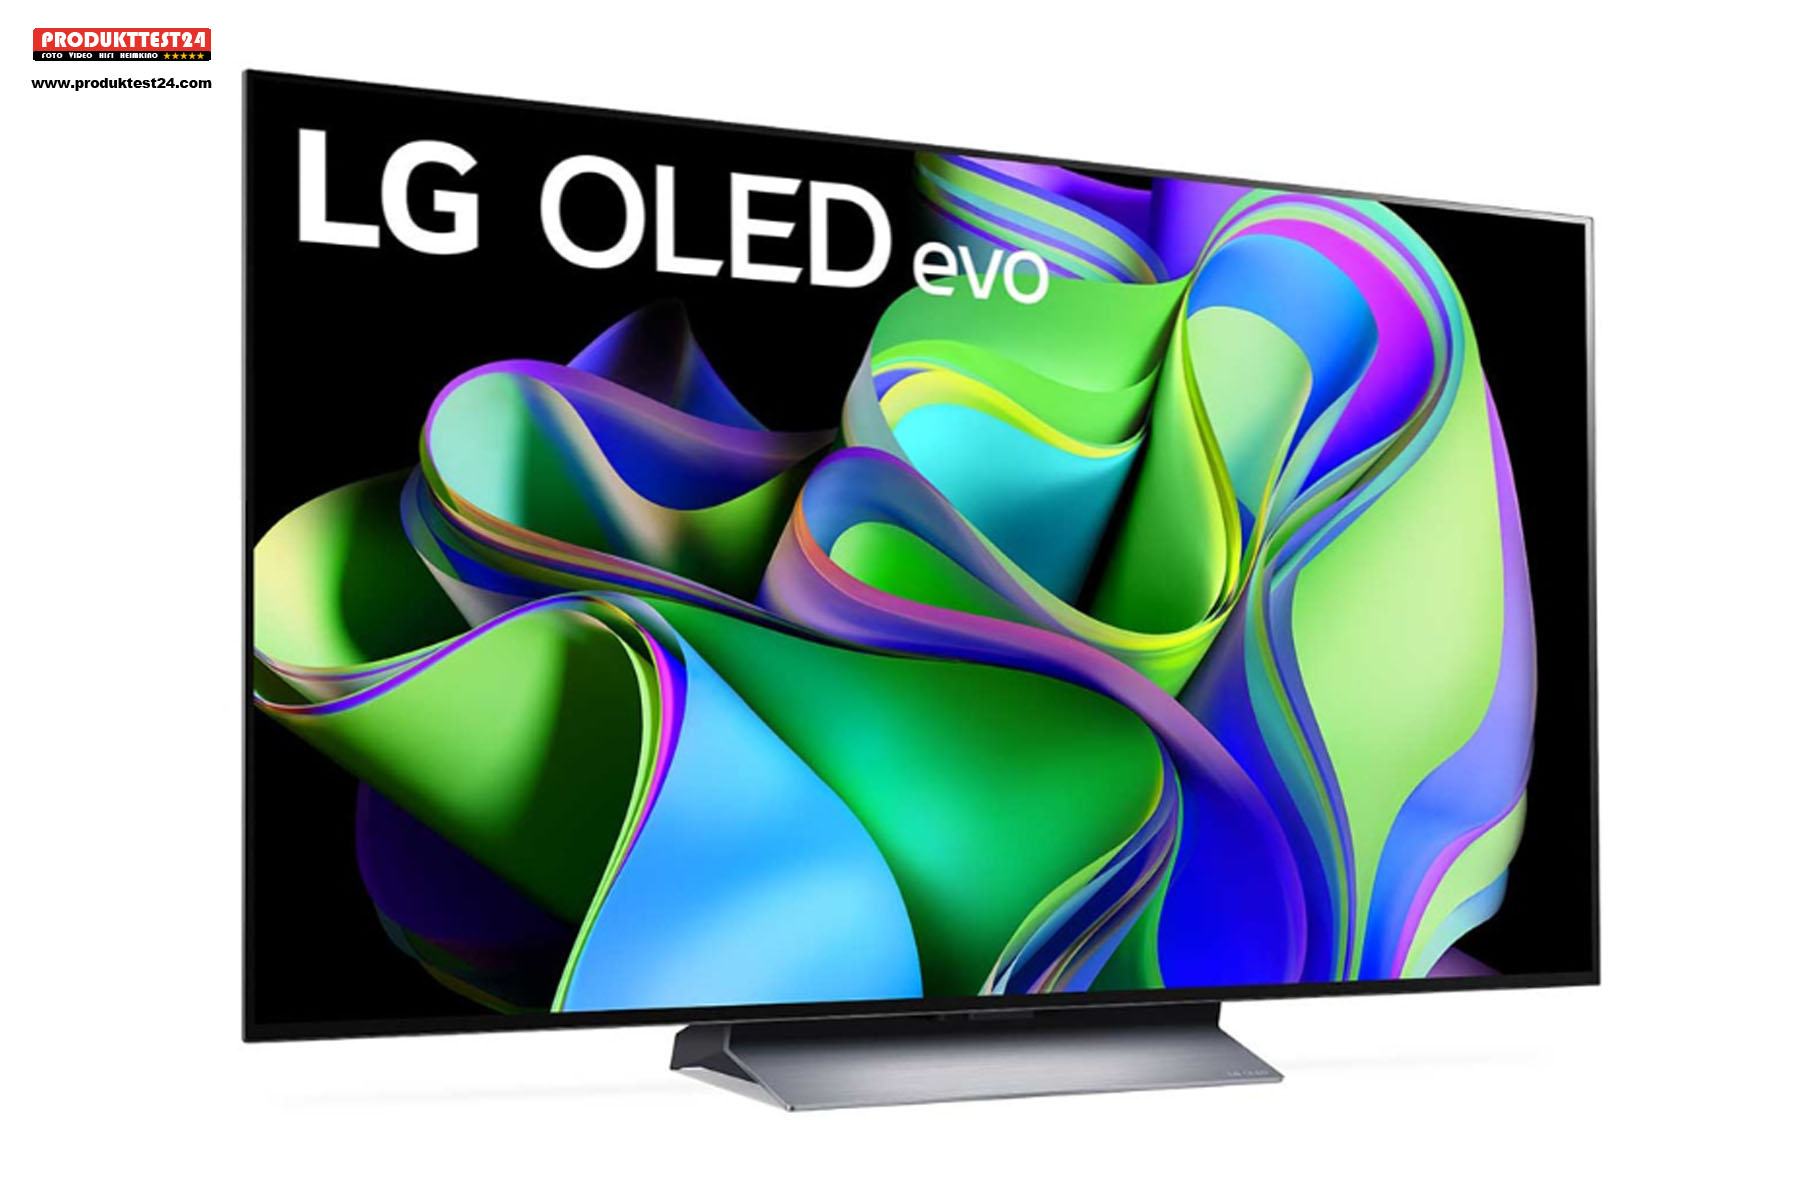 Der neue LG OLED Evo C3 mit 65 Zoll Bilddiagonale